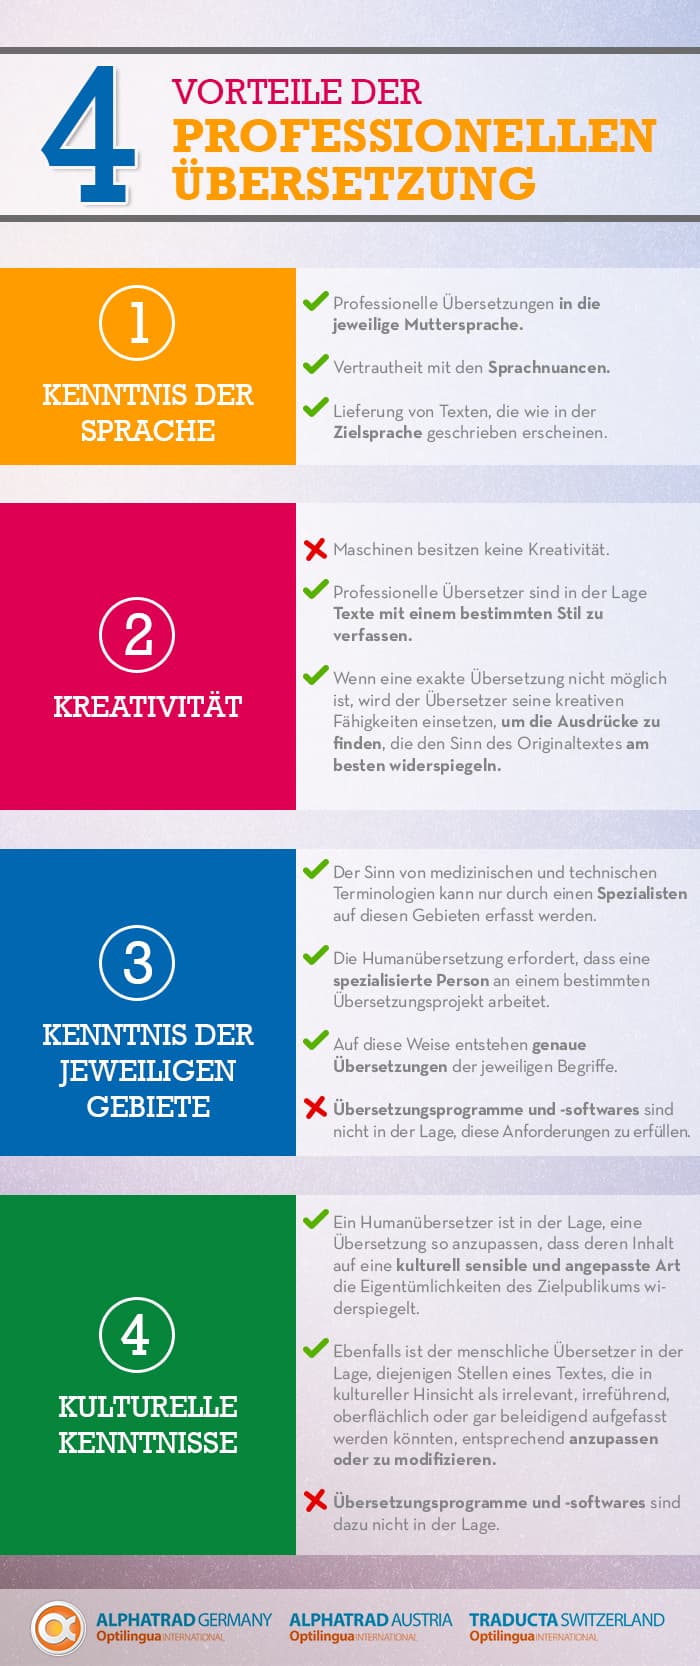 Vorteile der professionellen Übersetzung - Infografik Alphatrad Germany